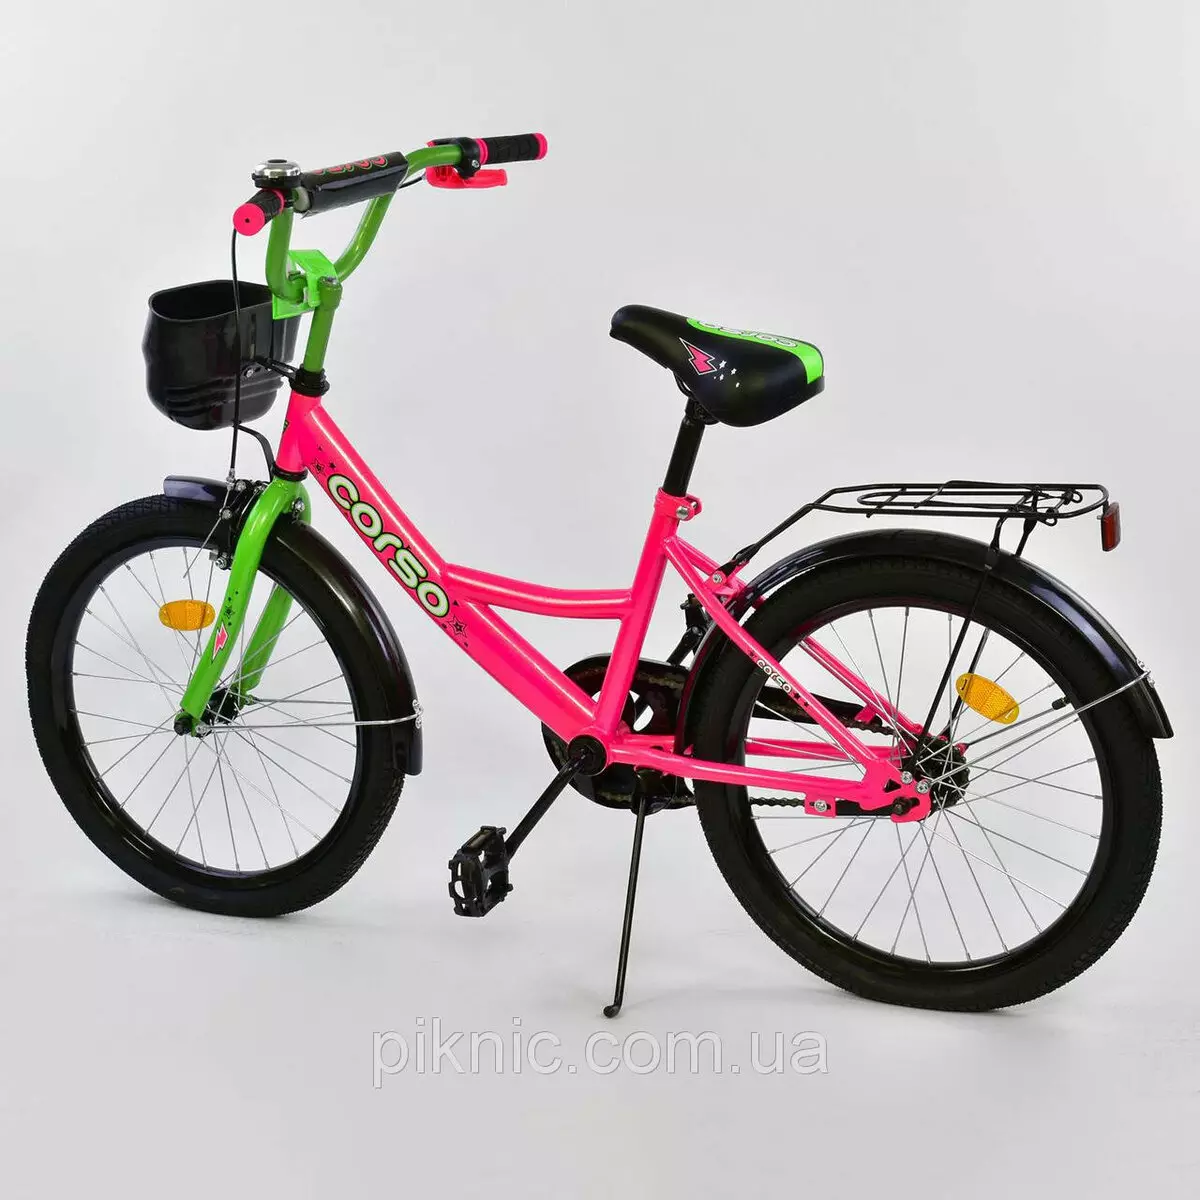 Bir çocuk için bisikletler 8 yaşındadır: Bir okul çocuğu için en iyi çocuk bisikleti nasıl seçilir? Tekerleklerin boyutunu nasıl seçersiniz? 8554_14